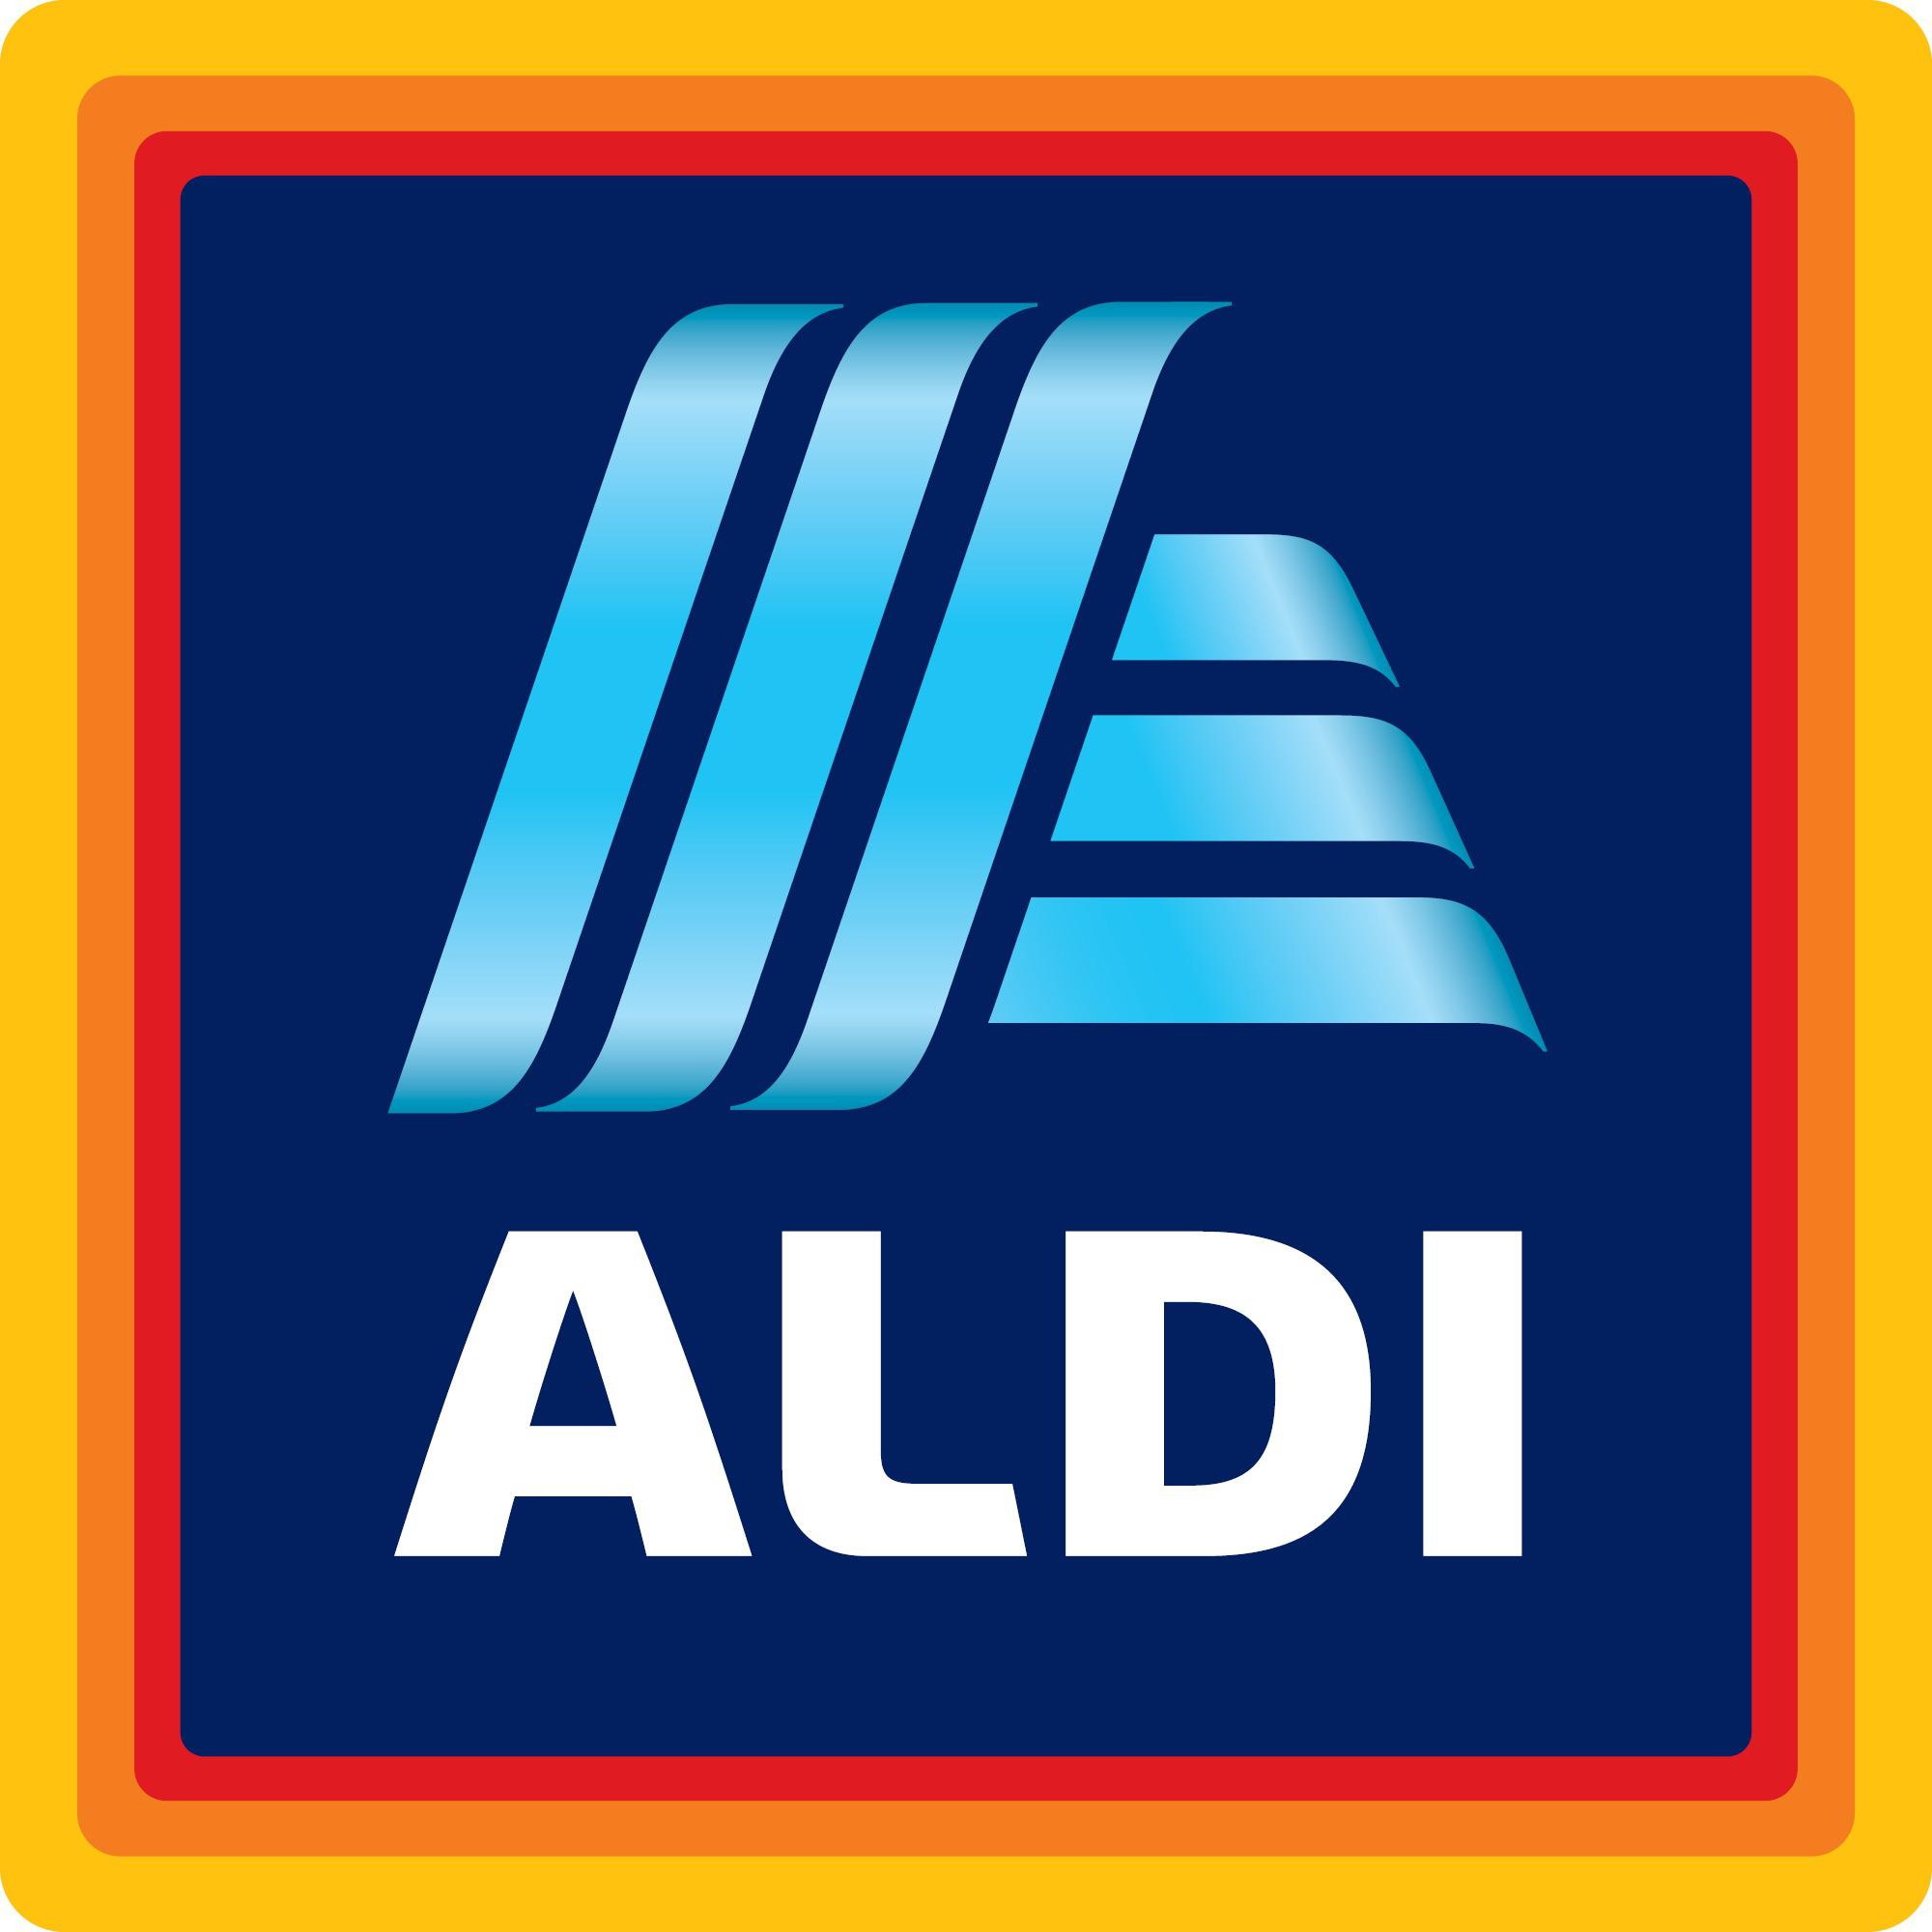 ALDI - Supermarket - Vecsés - 06 80 088 264 Hungary | ShowMeLocal.com